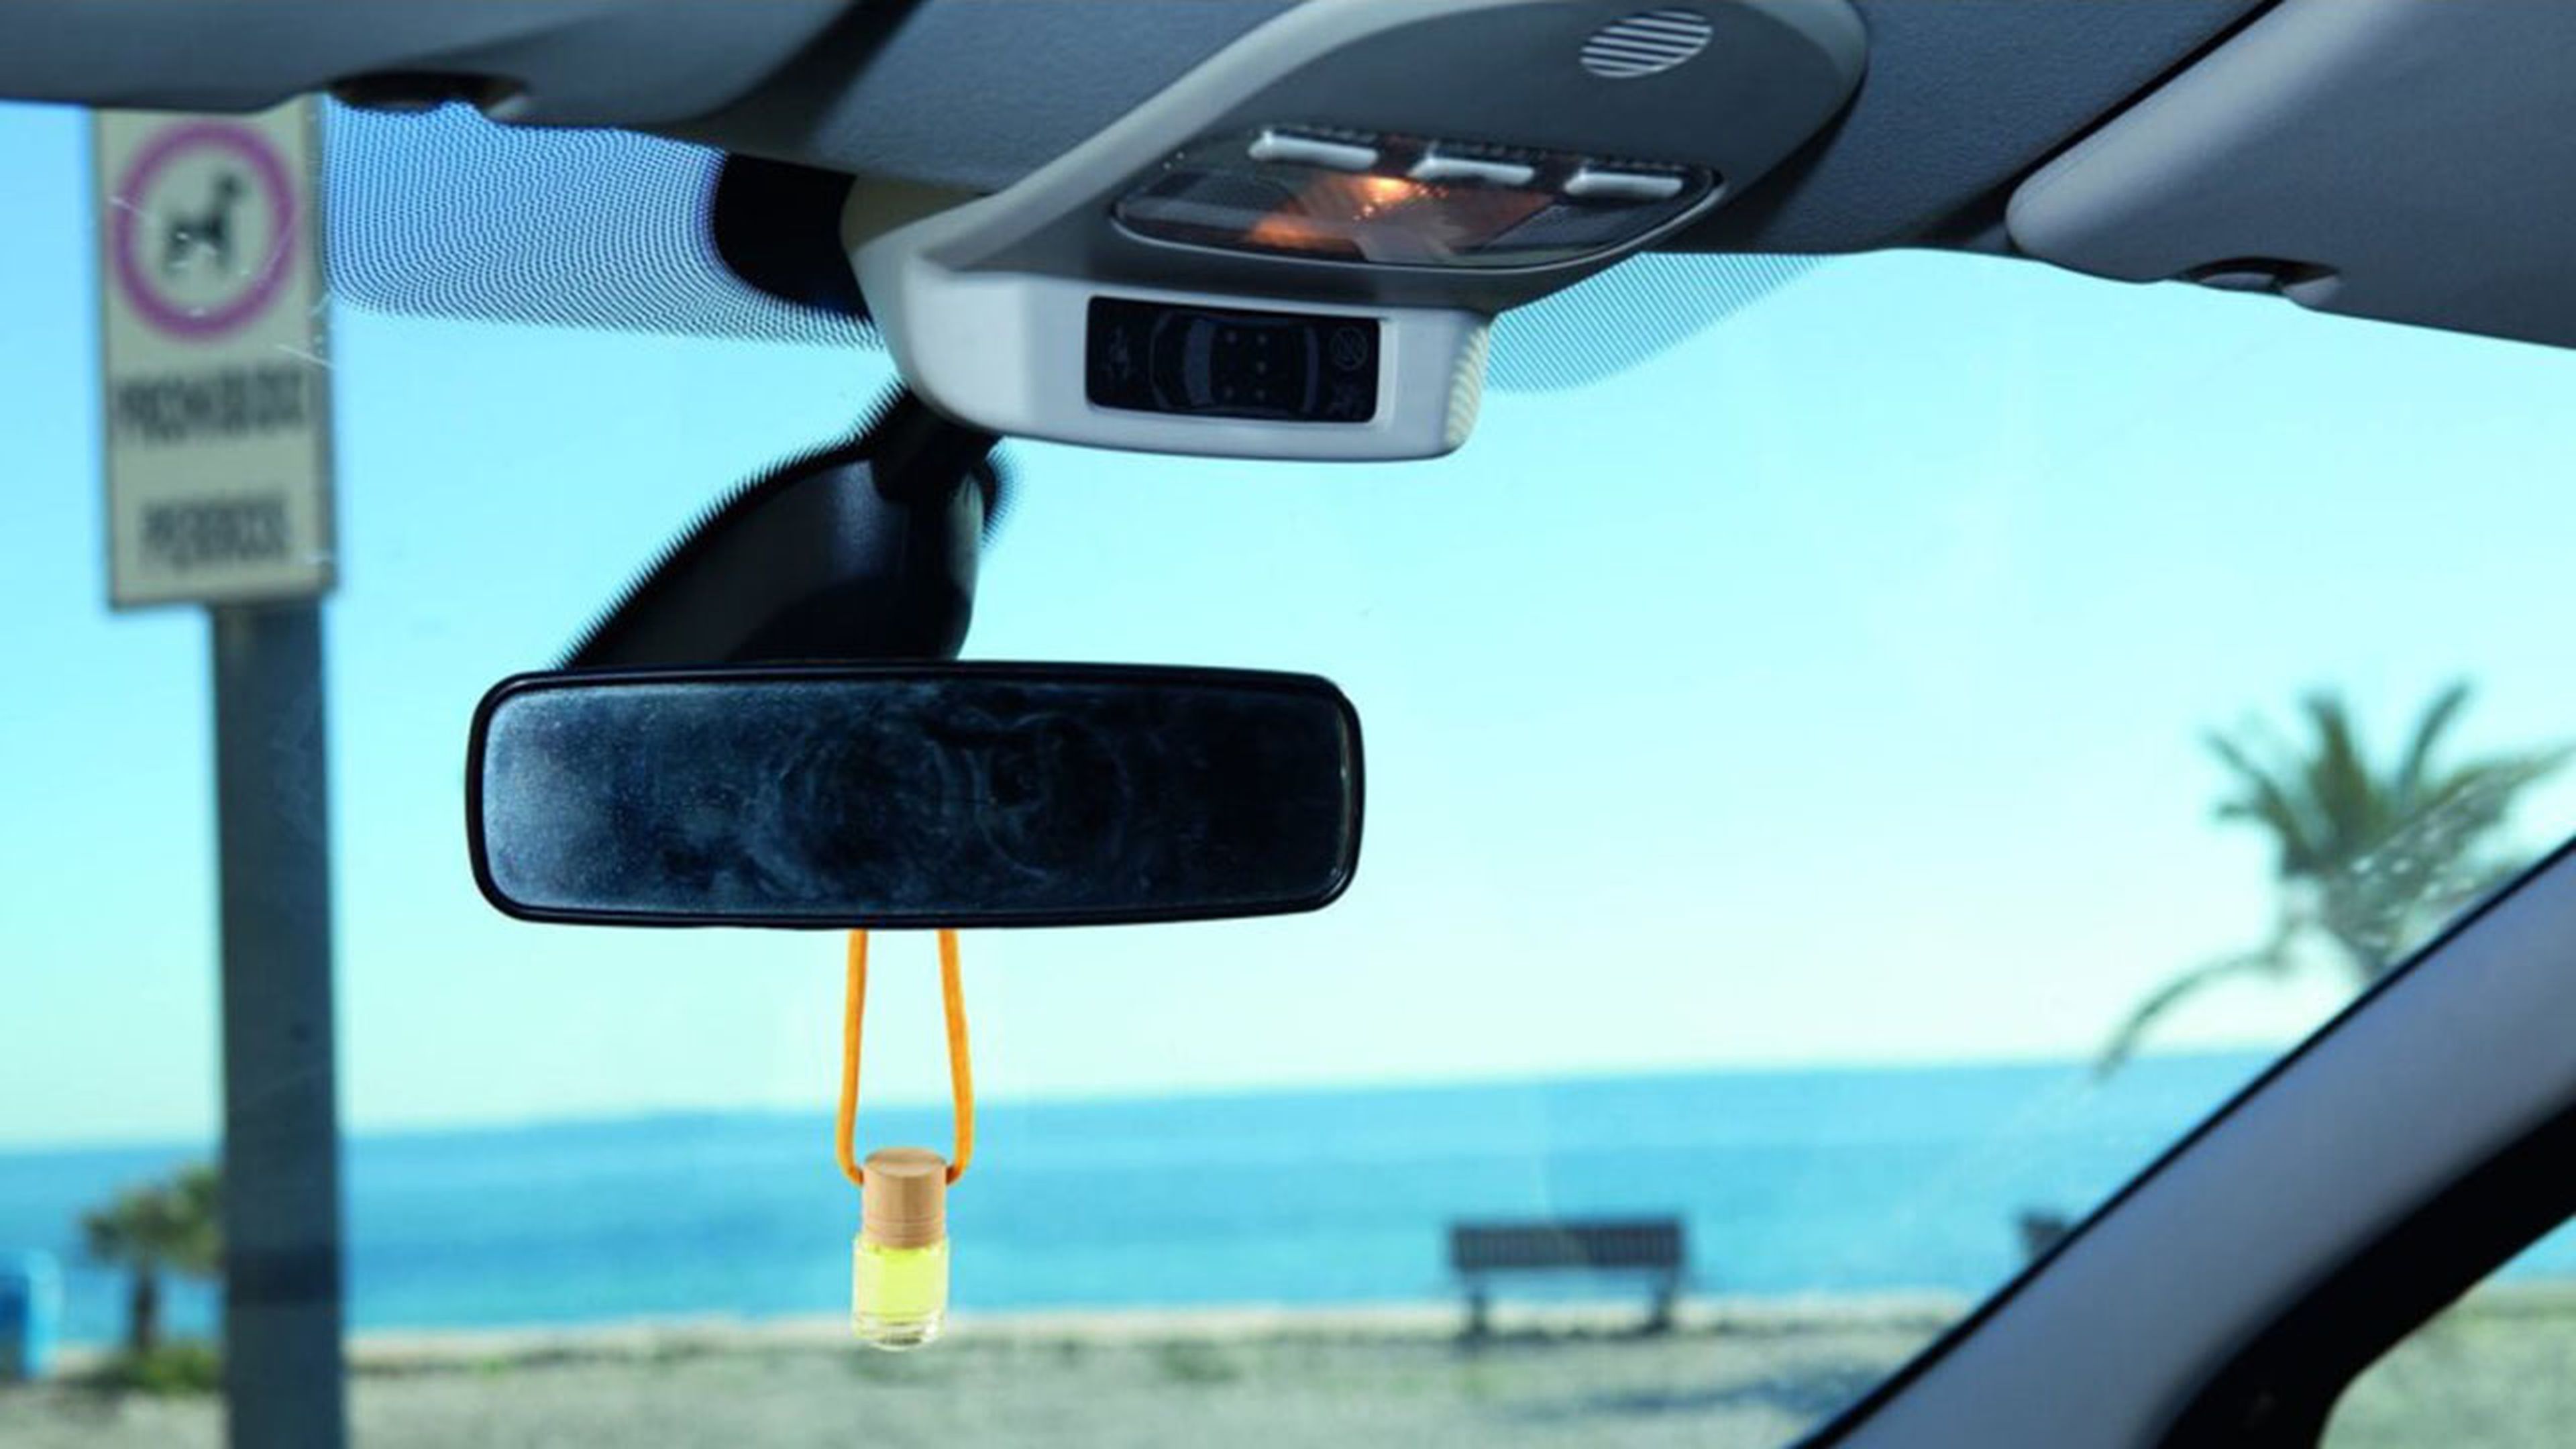 ambientador colgado del espejo retrovisor interior